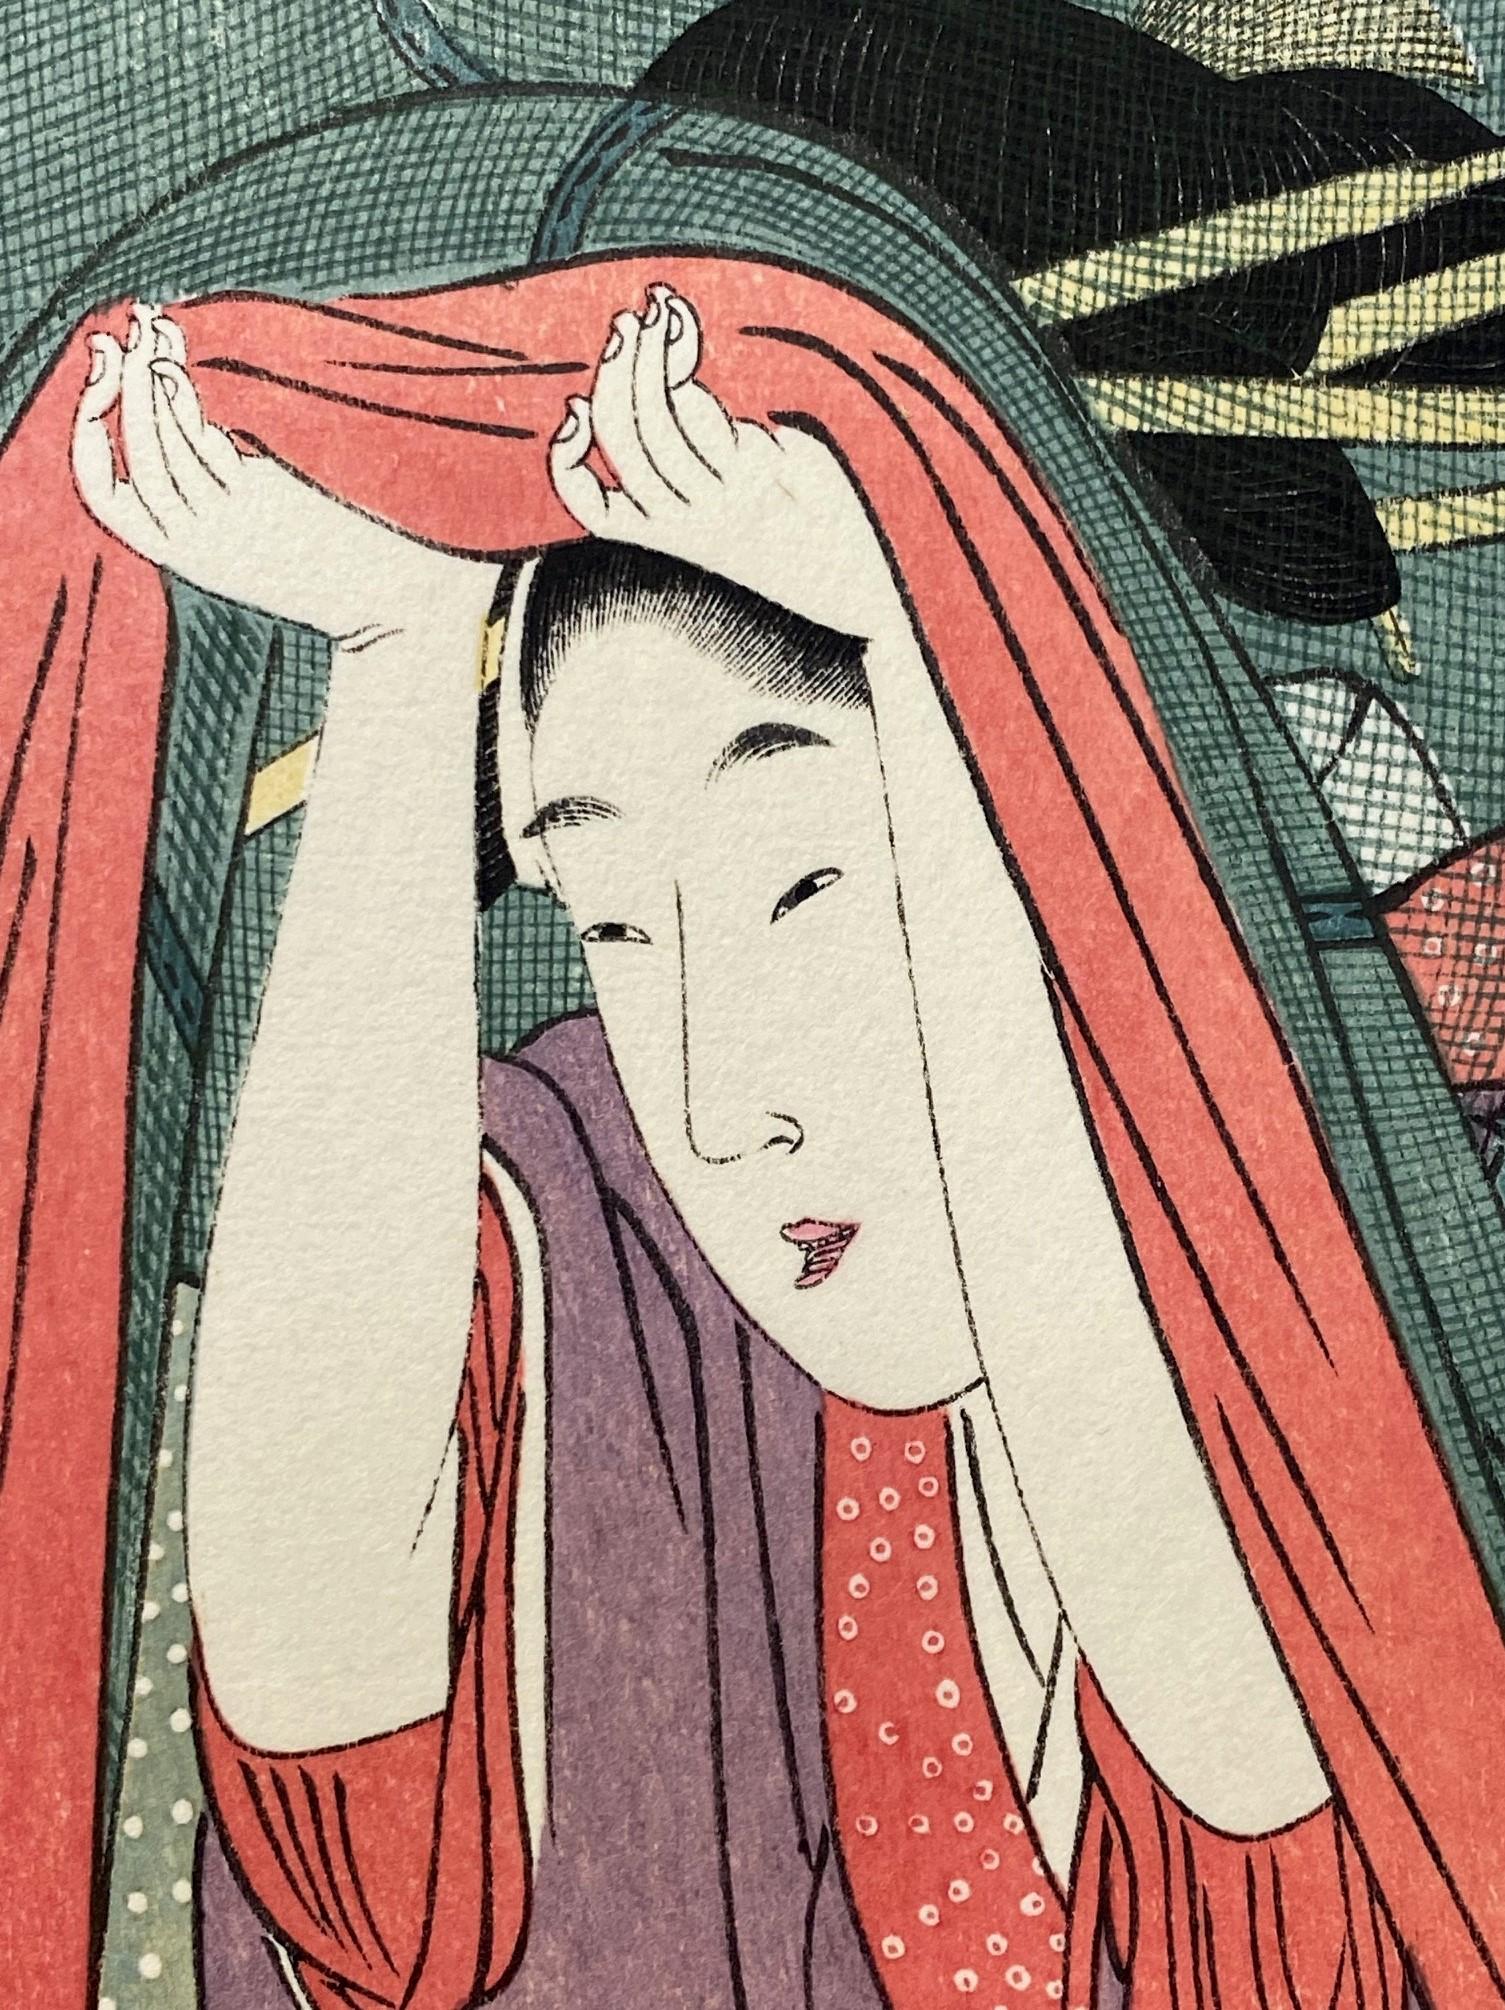 Paper Kitagawa Utamaro Japanese Woodblock Print The Mosquito Net Women With Opium Pipe